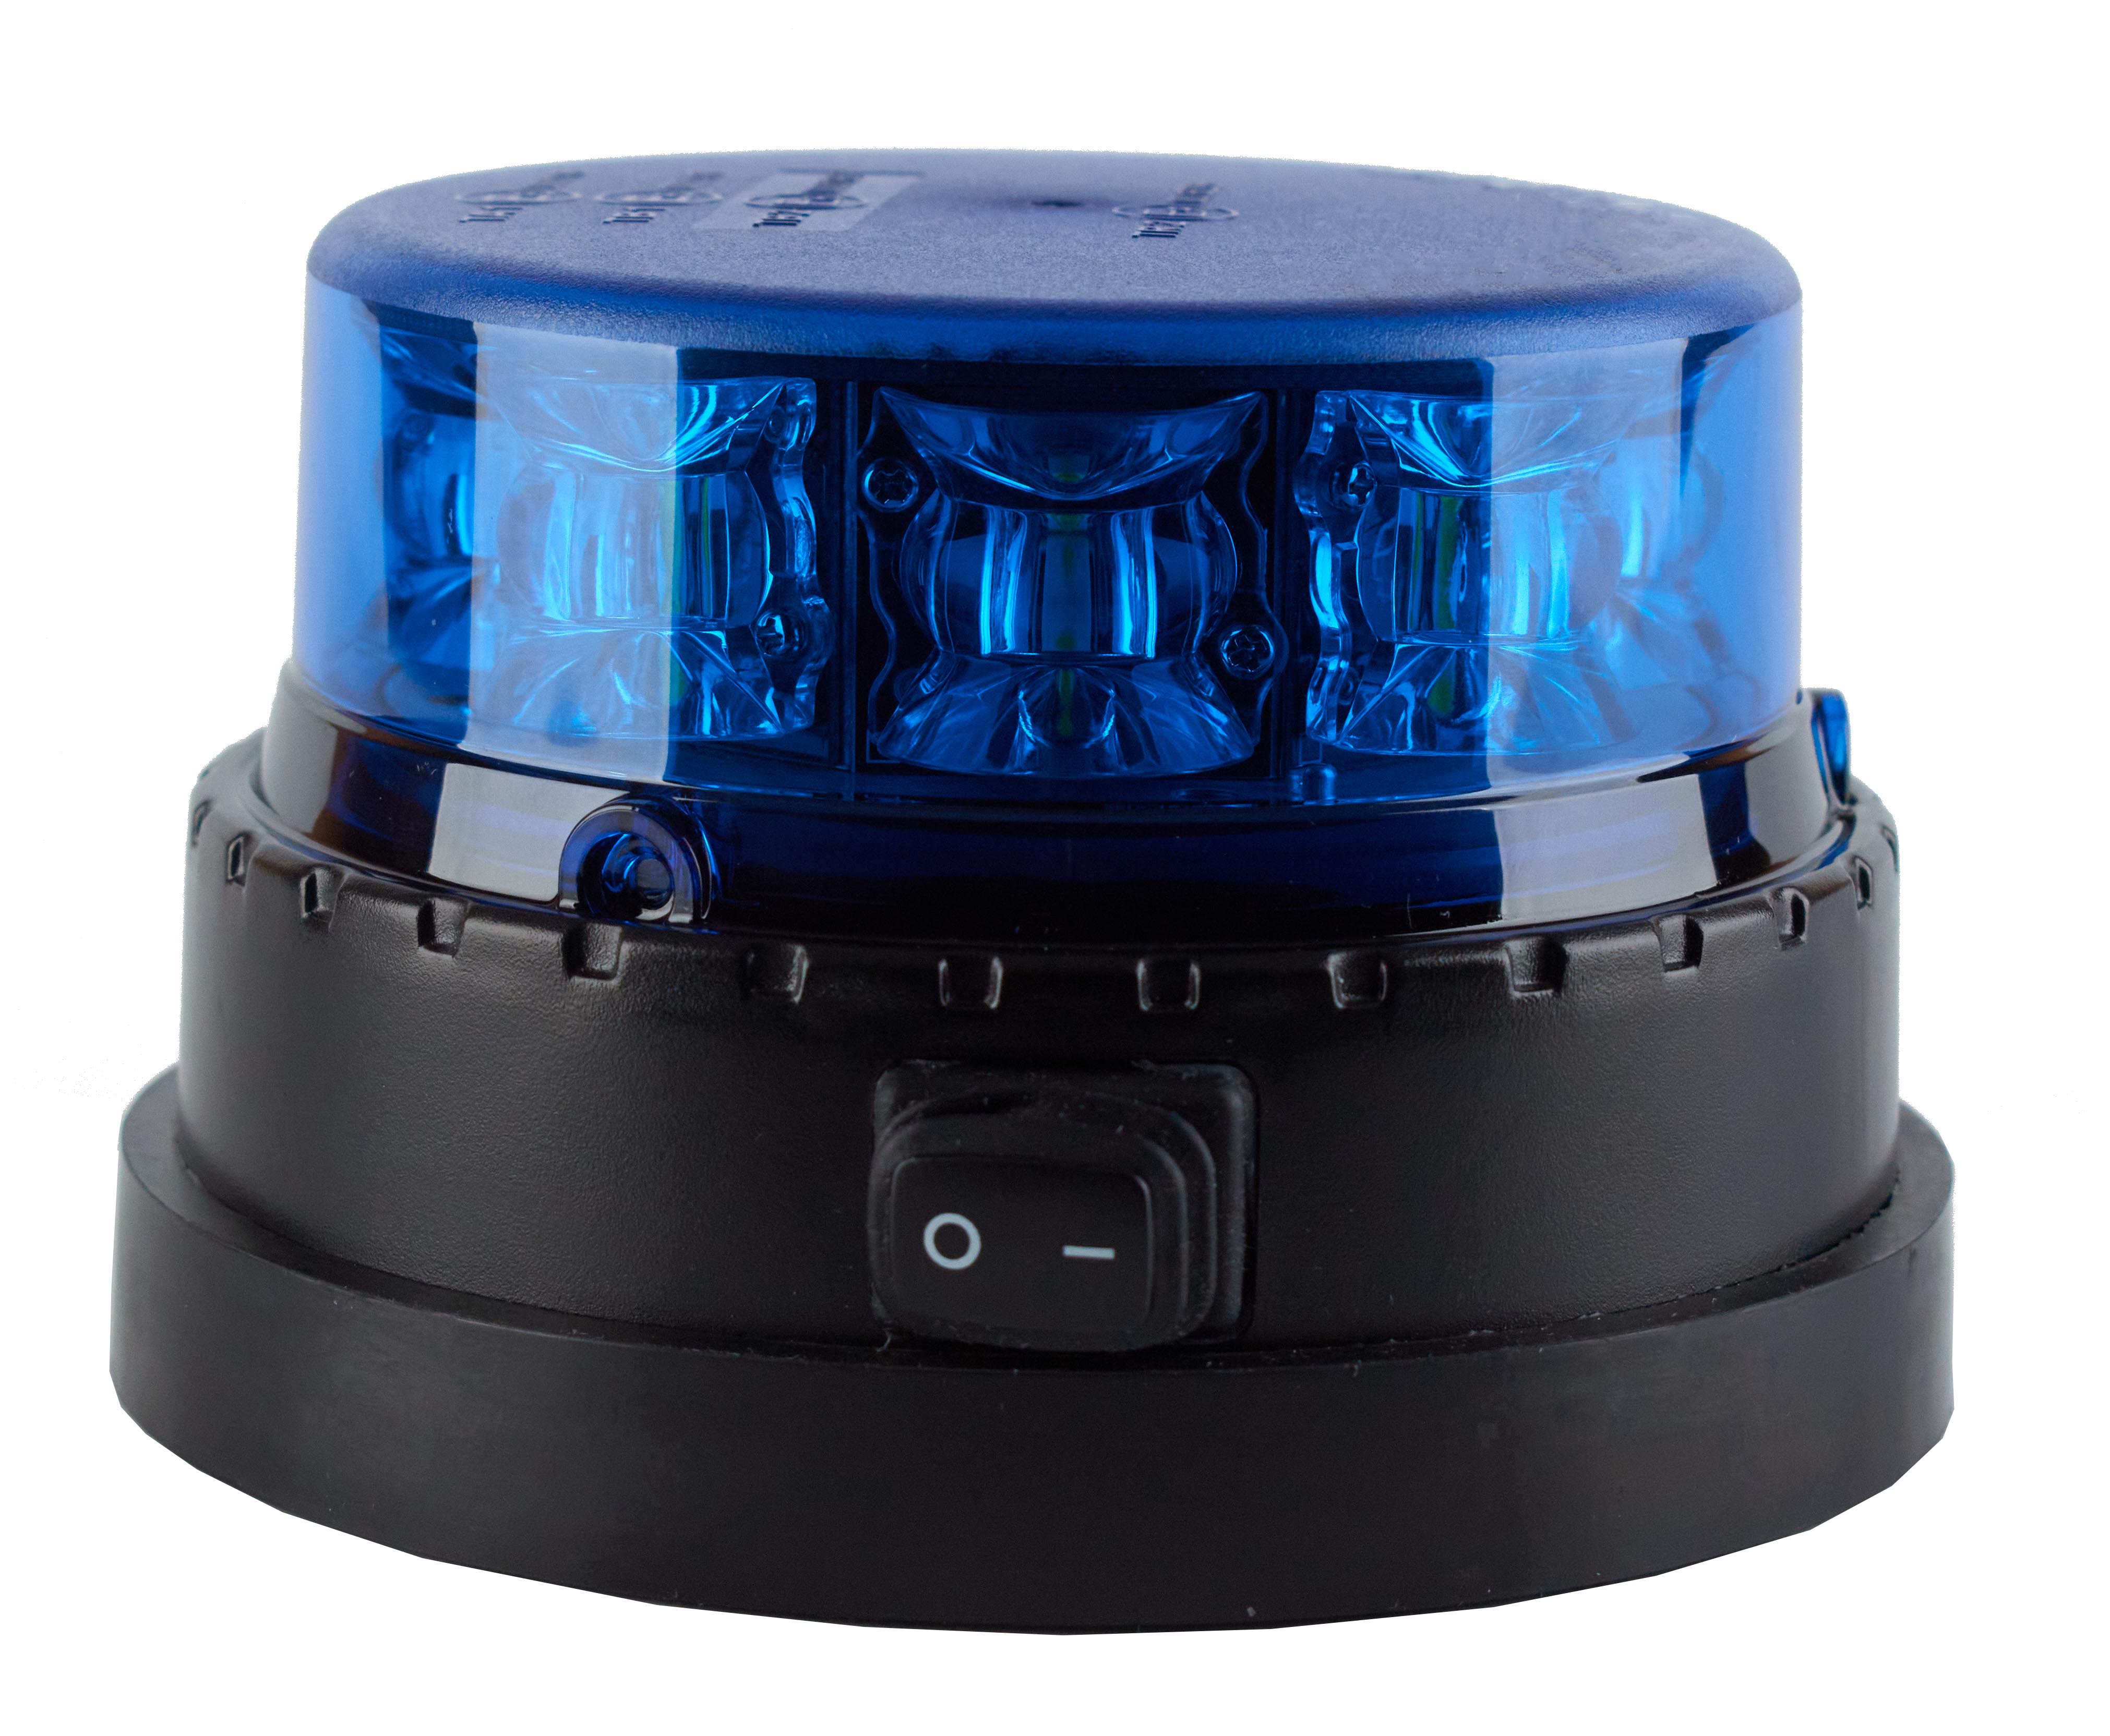 Gyrophare magnétique à led bleu à pile pour signalisation autonome